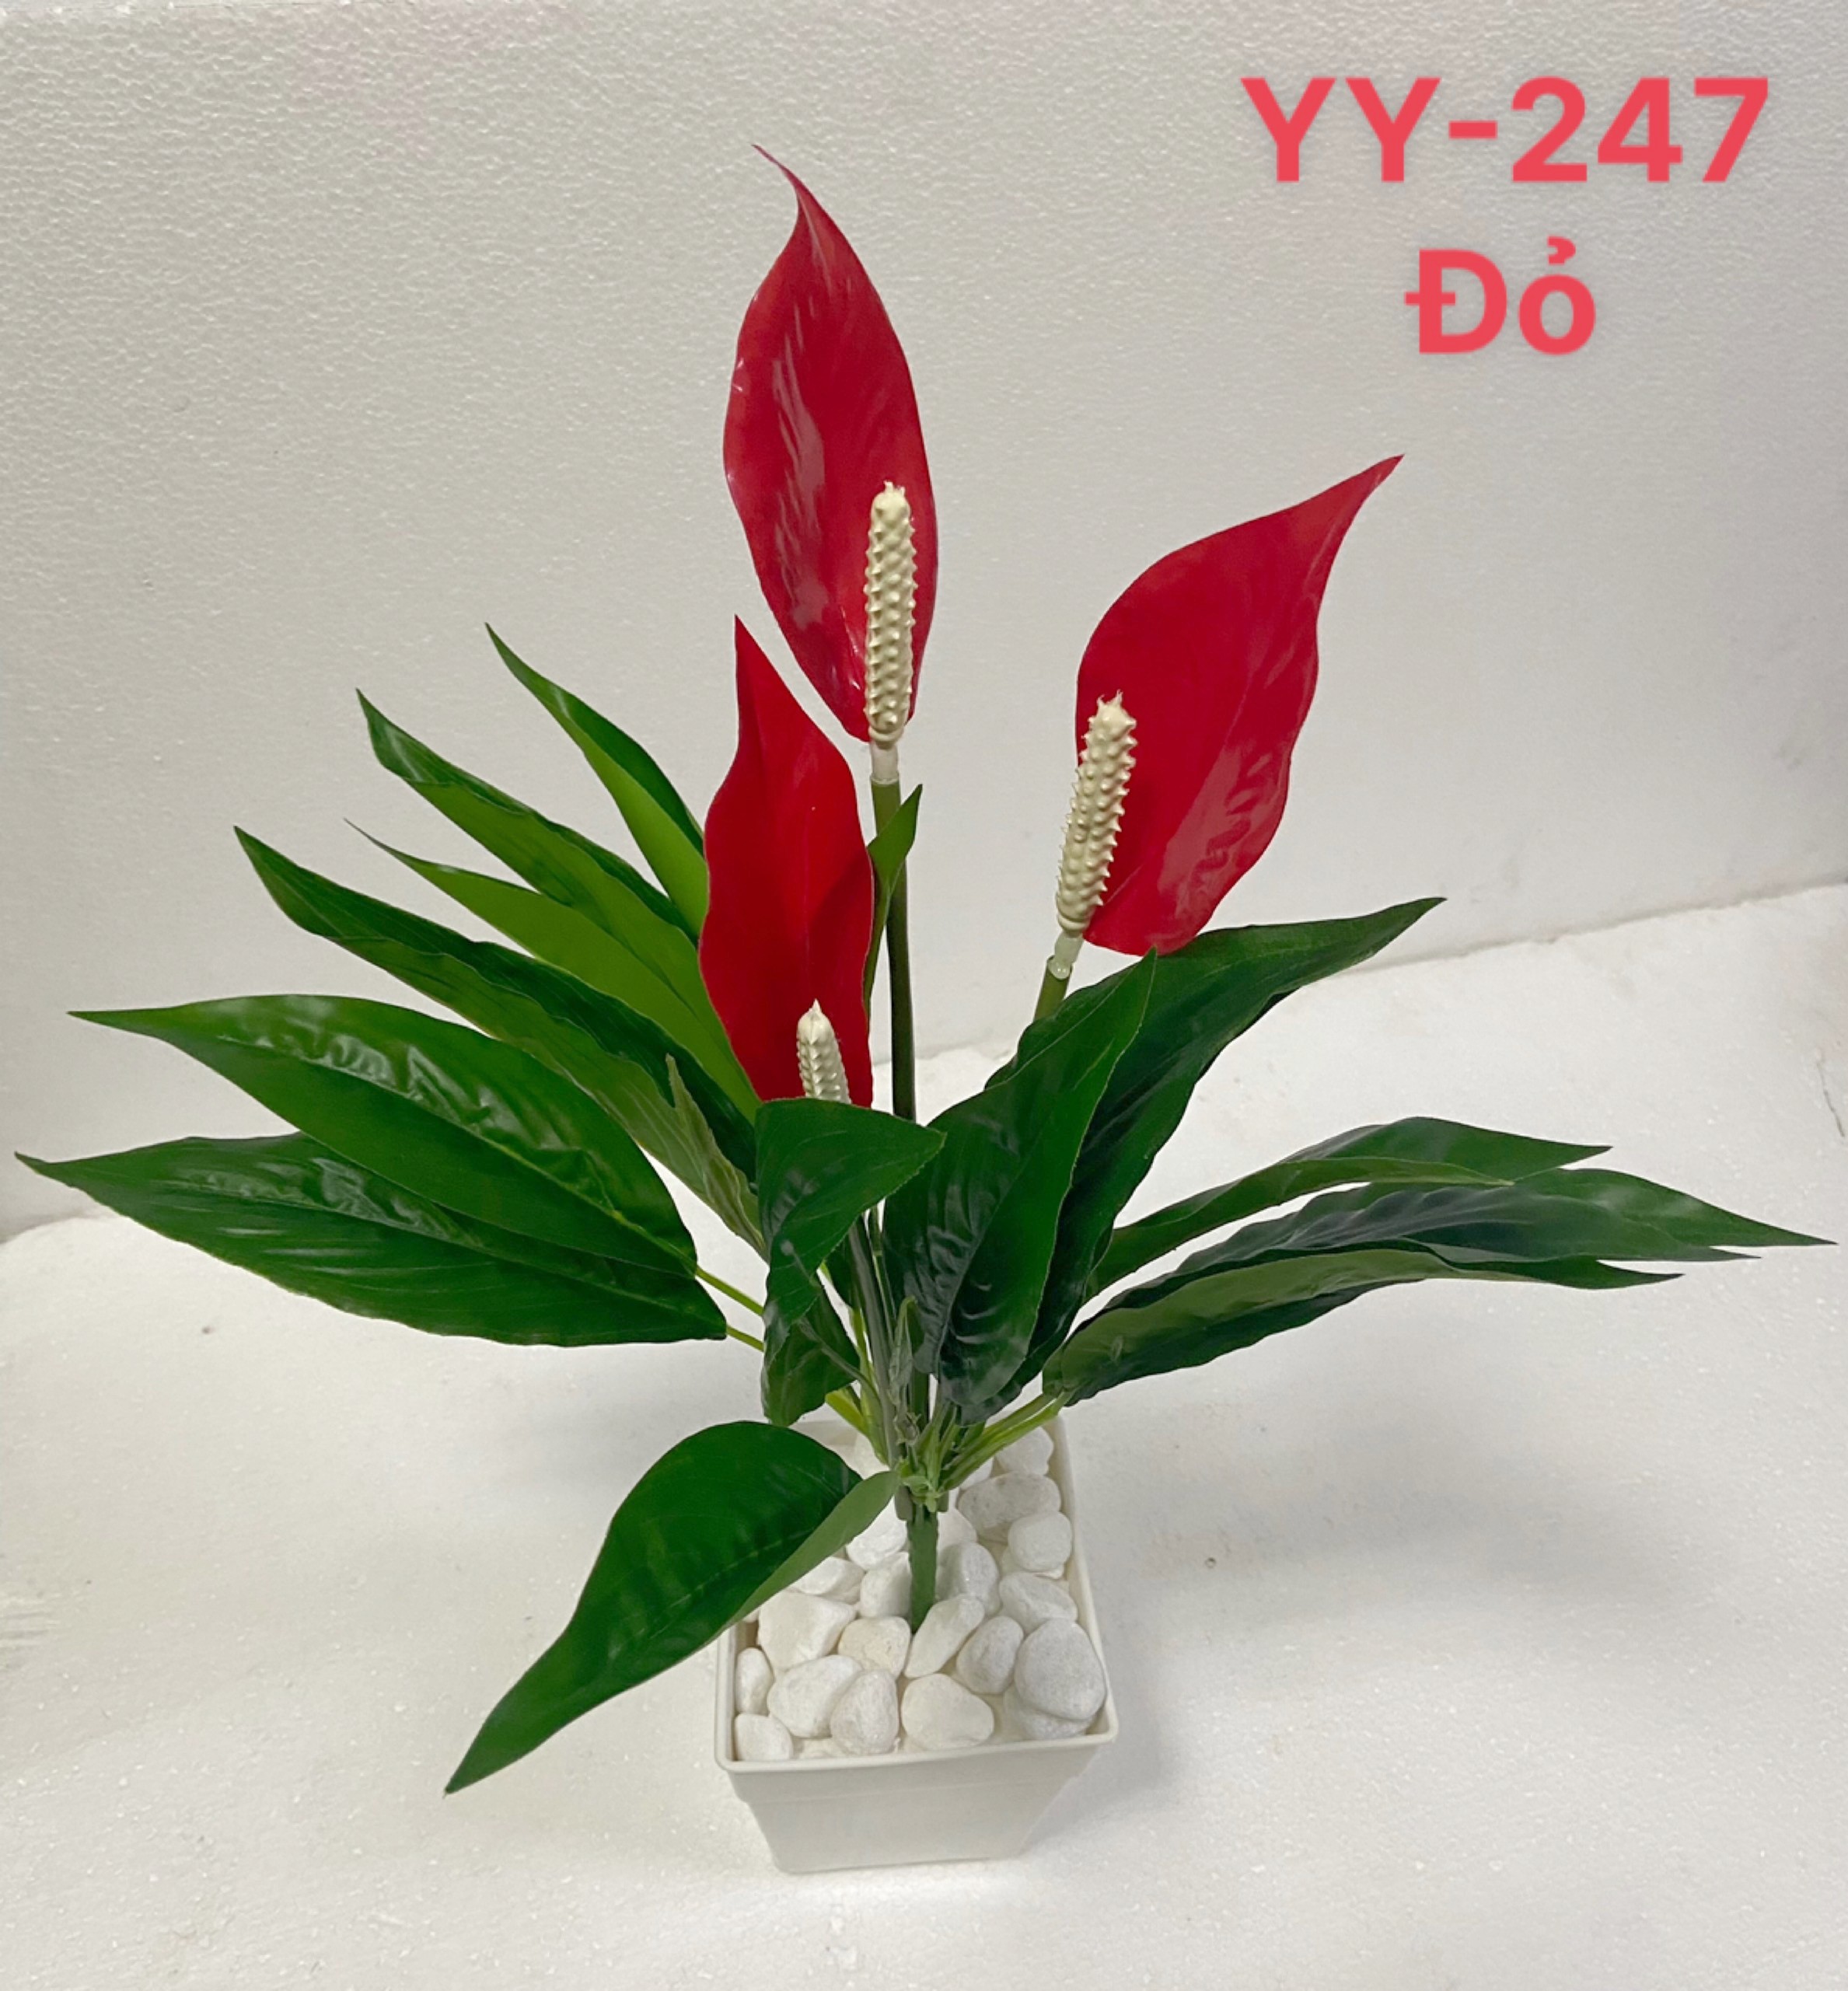 Hoa giả, cây giả trang trí, cây lan ý giả cao 45cm - YY-247 (chưa bao gồm chậu)